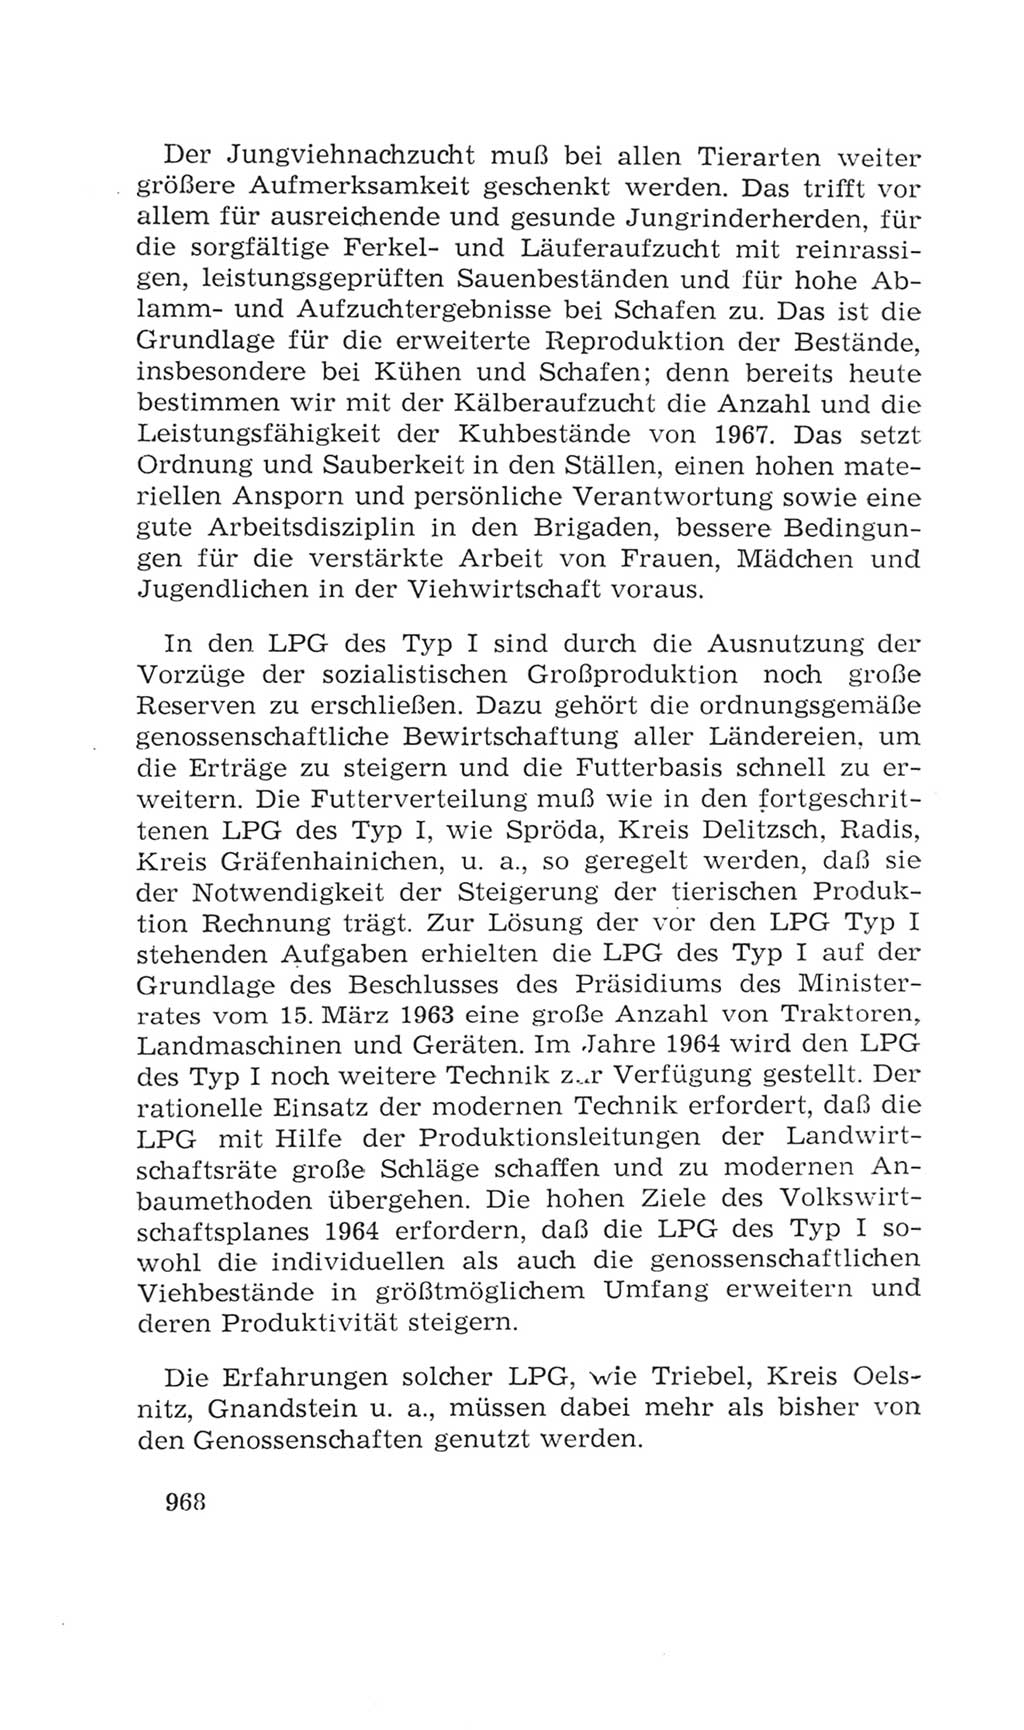 Volkskammer (VK) der Deutschen Demokratischen Republik (DDR), 4. Wahlperiode 1963-1967, Seite 968 (VK. DDR 4. WP. 1963-1967, S. 968)